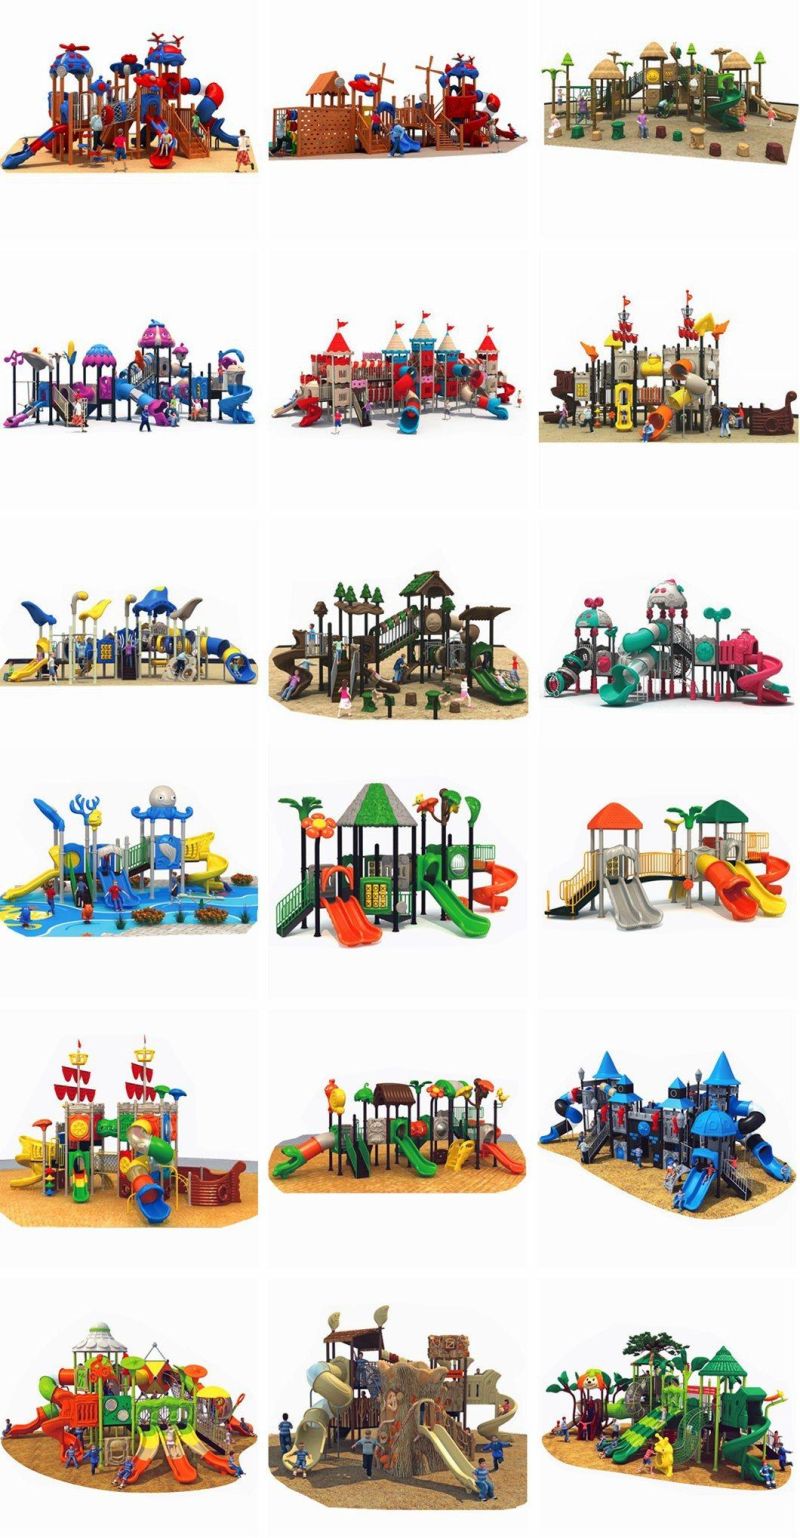 Outdoor Children′s Playground Amusement Park Equipment Combination Slide Toy 367b